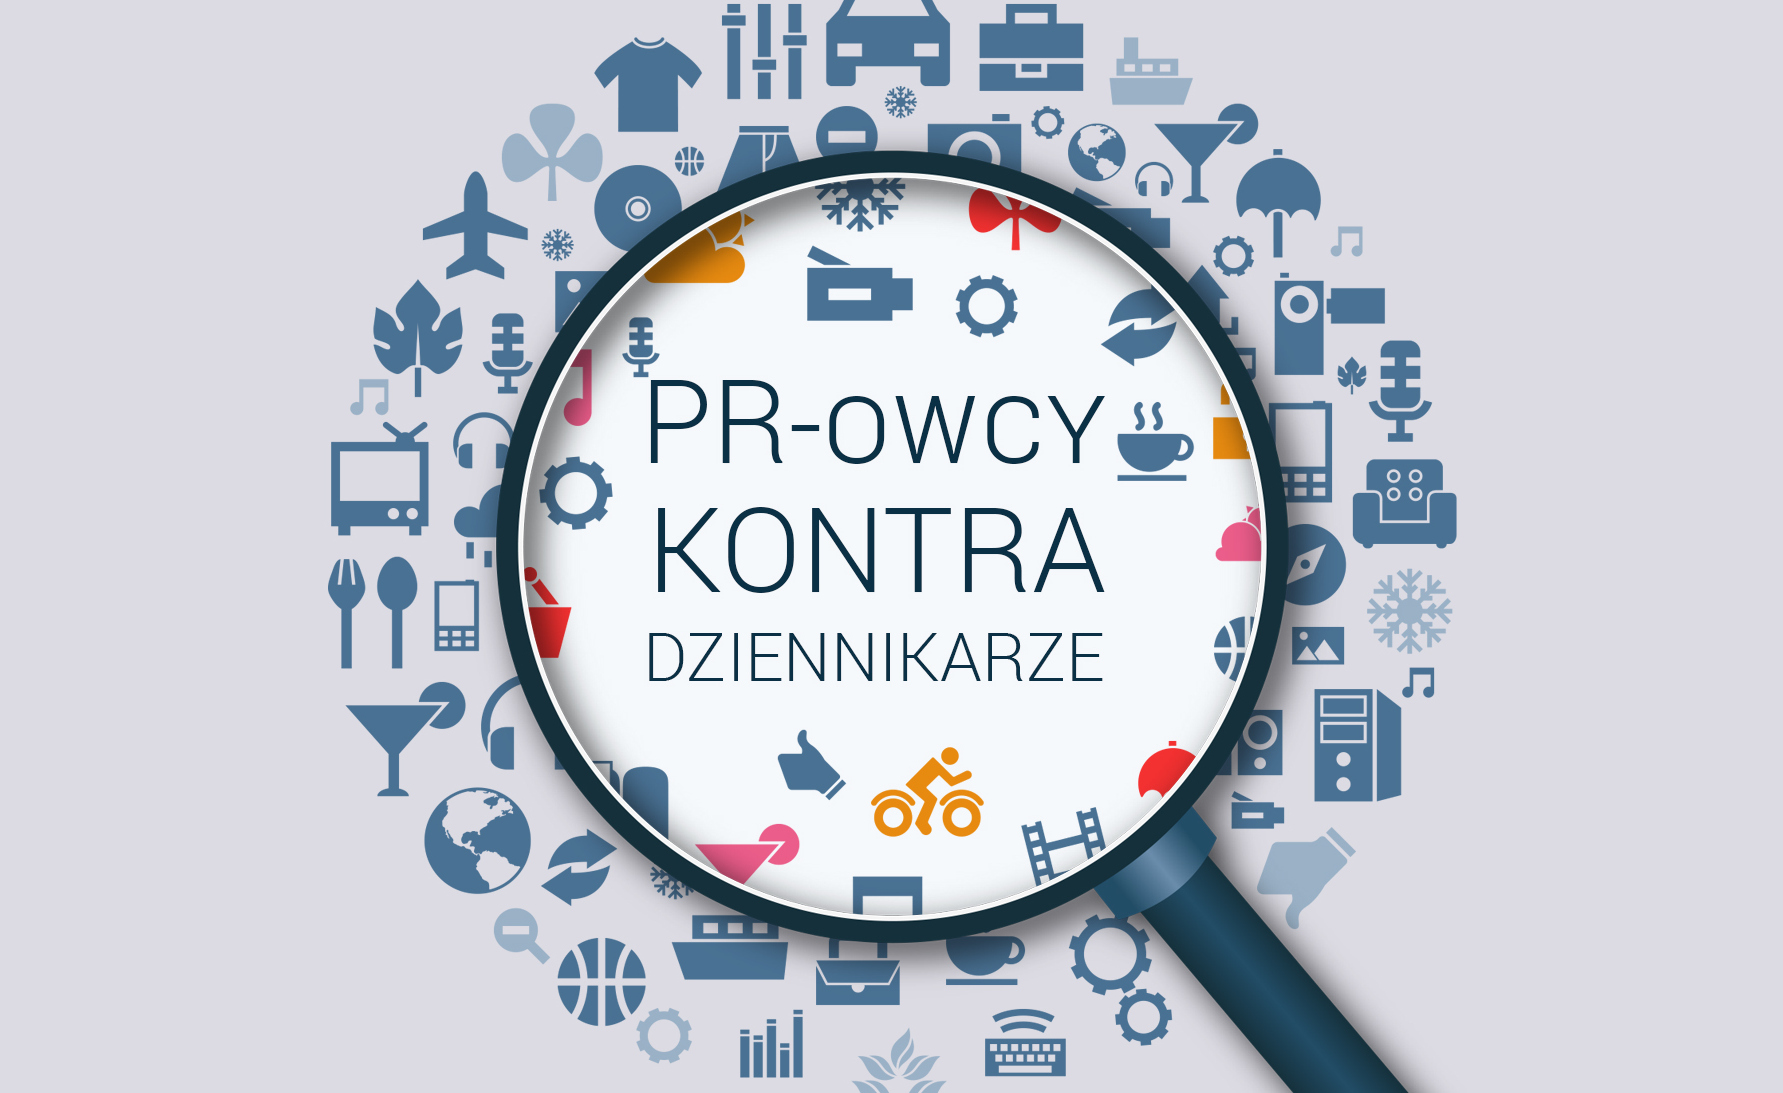 PR-owcy oczami polskich dziennikarzy Kongres PR mediarun com kongres pr